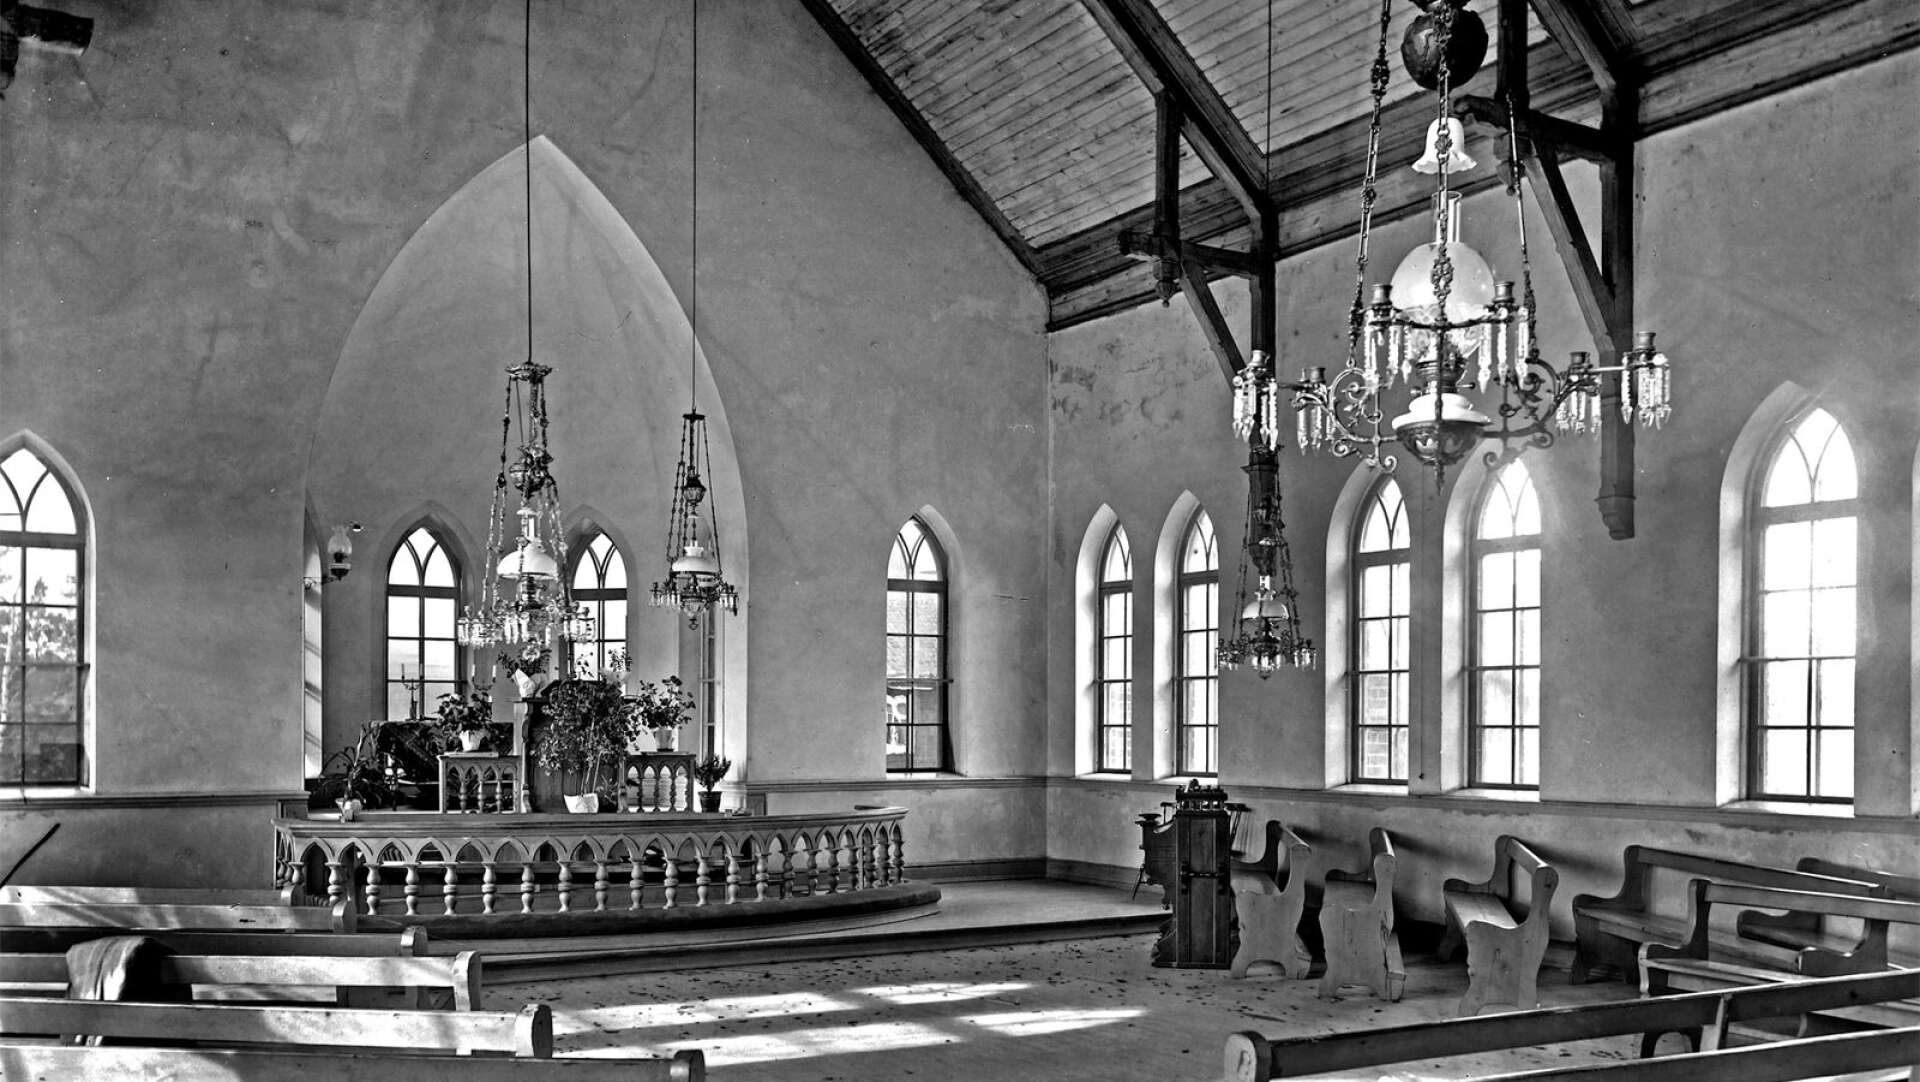 Metodistkyrkan i Kanada uppfördes 1898 och bilden är tagen av Albin Andersson något år senare. År 1888 fick församlingen kungligt tillstånd för verksamheten, enligt Fotoklubbens noteringar.